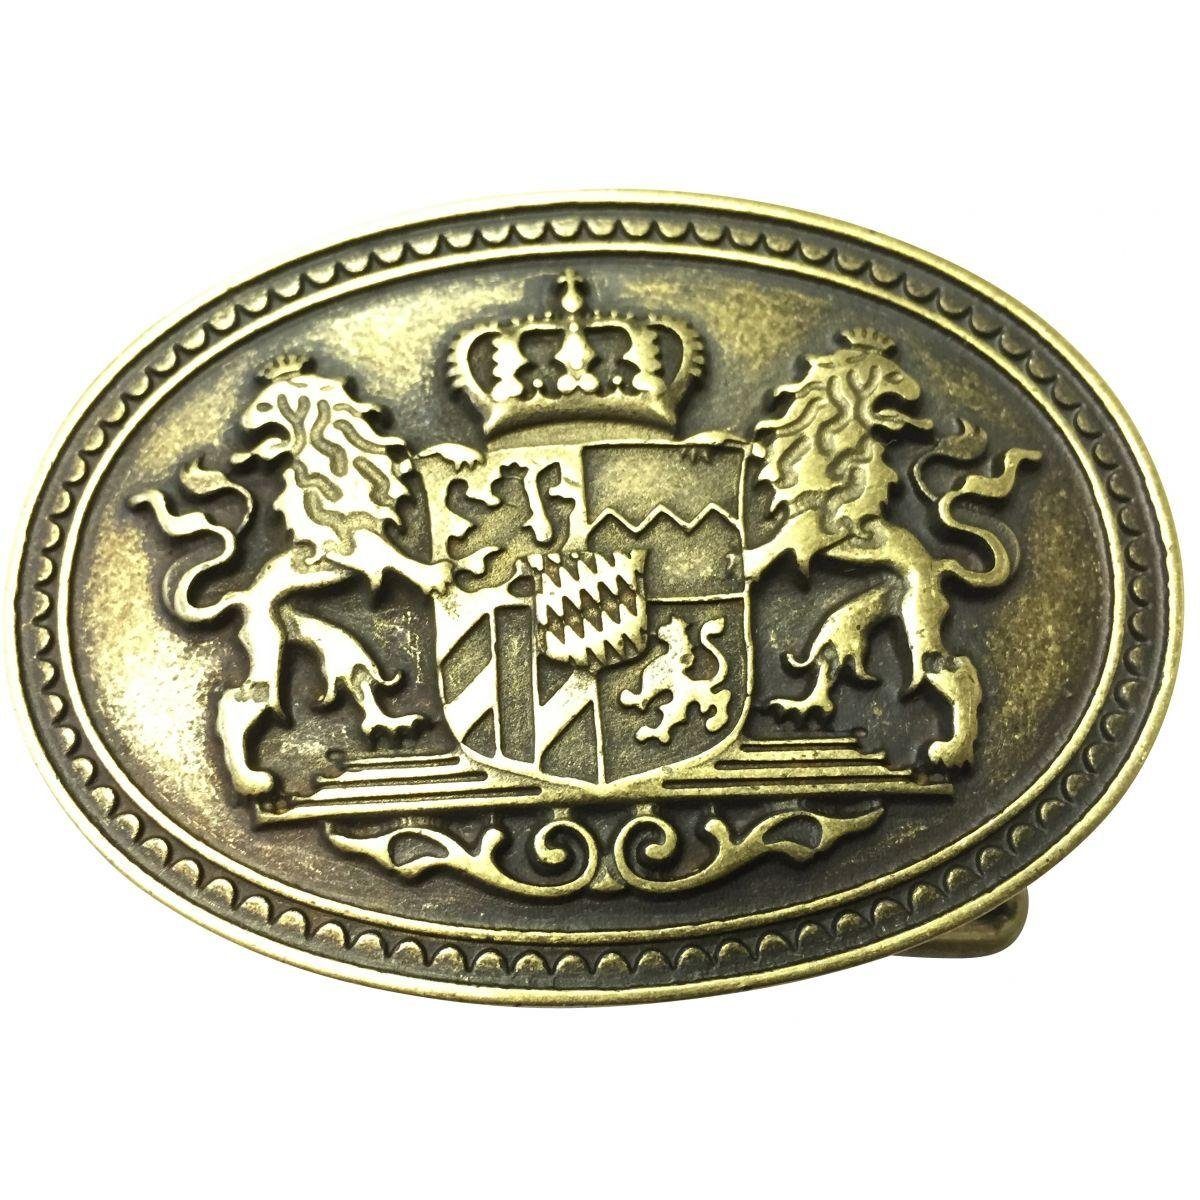 BELTINGER Gürtelschnalle Doppellöwe und Wappen 4,0 cm - Buckle Wechselschließe Gürtelschließe 4 Altmessing